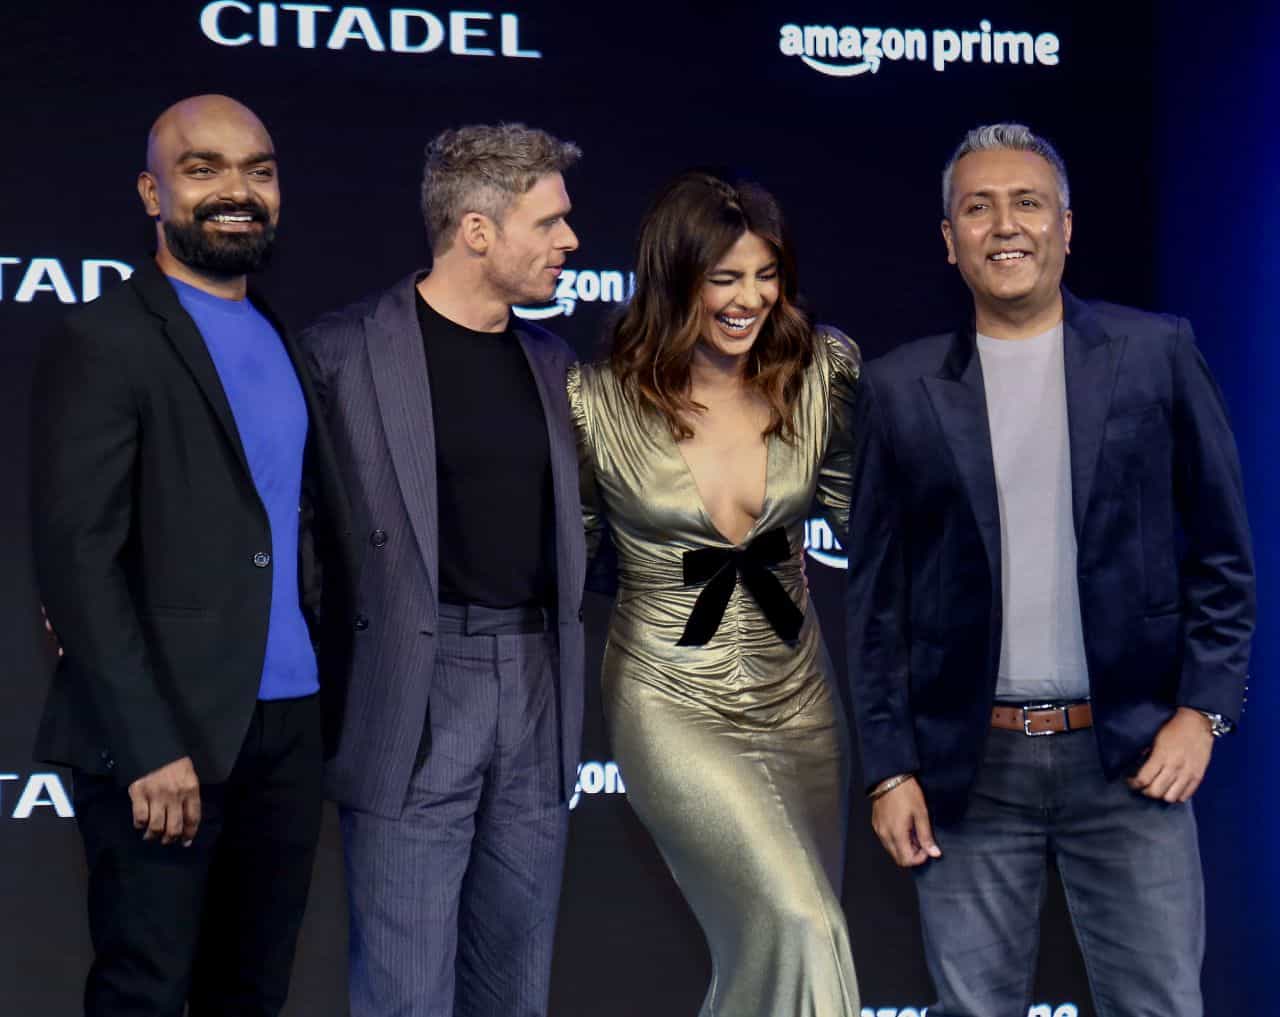 Priyanka Chopra in Gold Dress for "Citadel" Press Conference